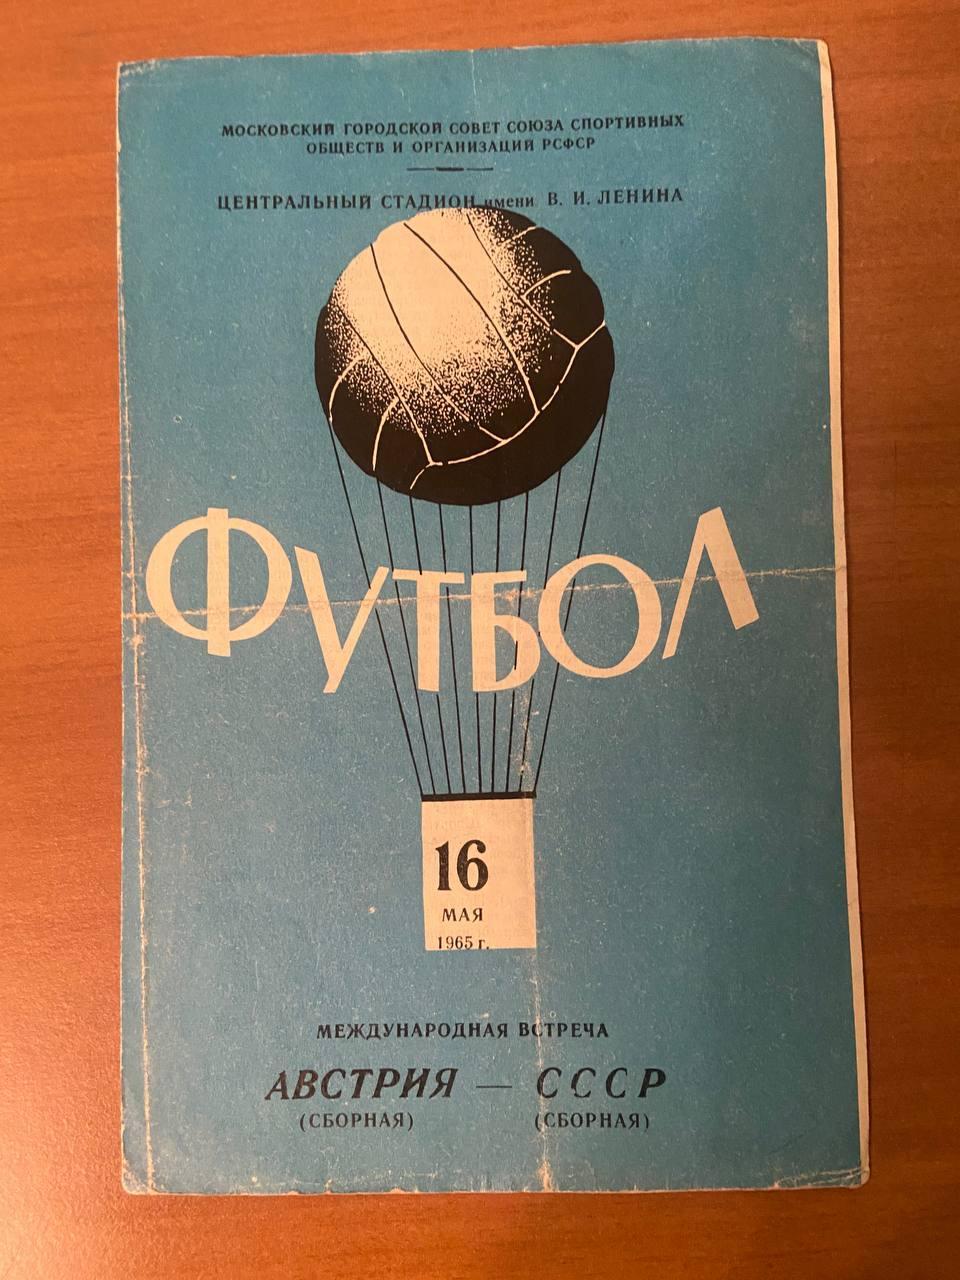 Австрия (сборная) – СССР (сборная), 16.05.1965 г., Международная встреча